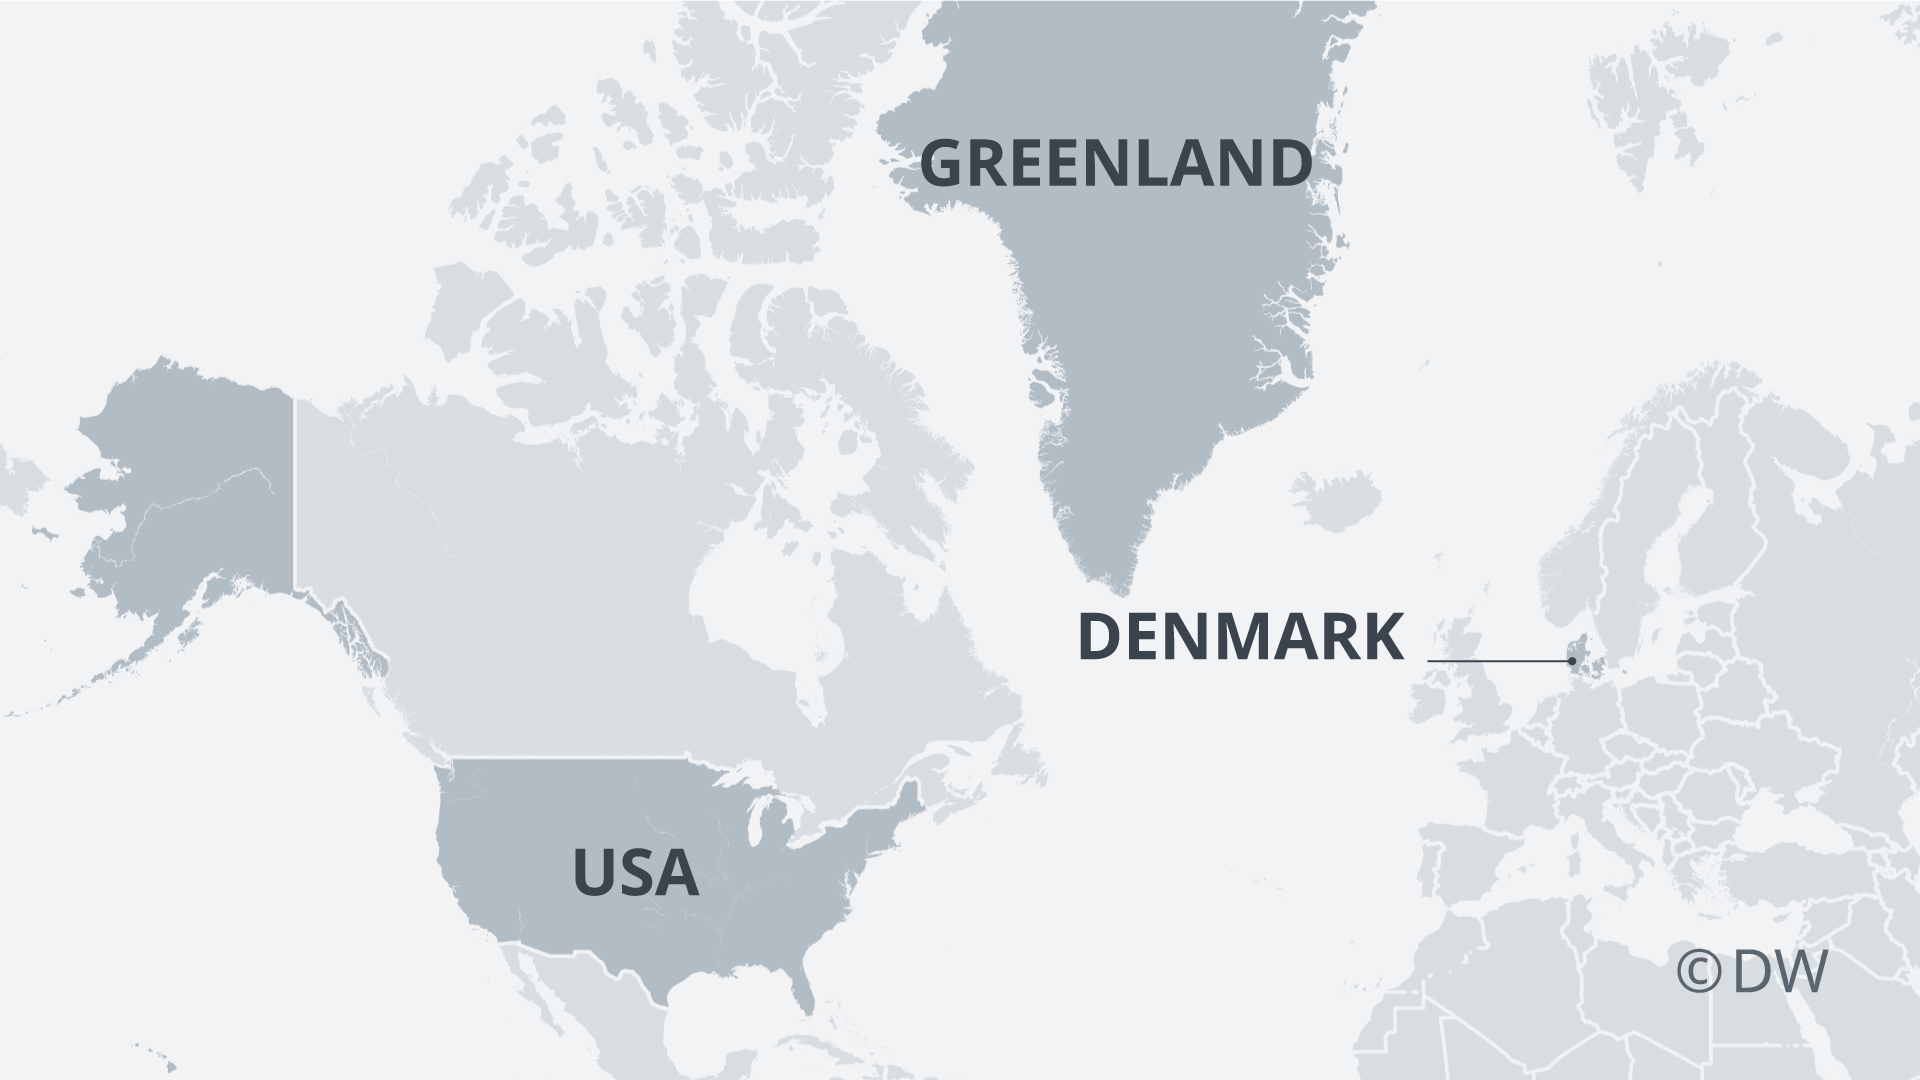 دونالد ترامپ گفته که می خواهد گرینلند، بزرگ ترین جزیره جهان، را بخرد اما اگر رییس جمهور ایالات متحده واقعاً چنین خیالی در سر دارد موانع بسیاری پیش روی او قرار خواهد داشت.